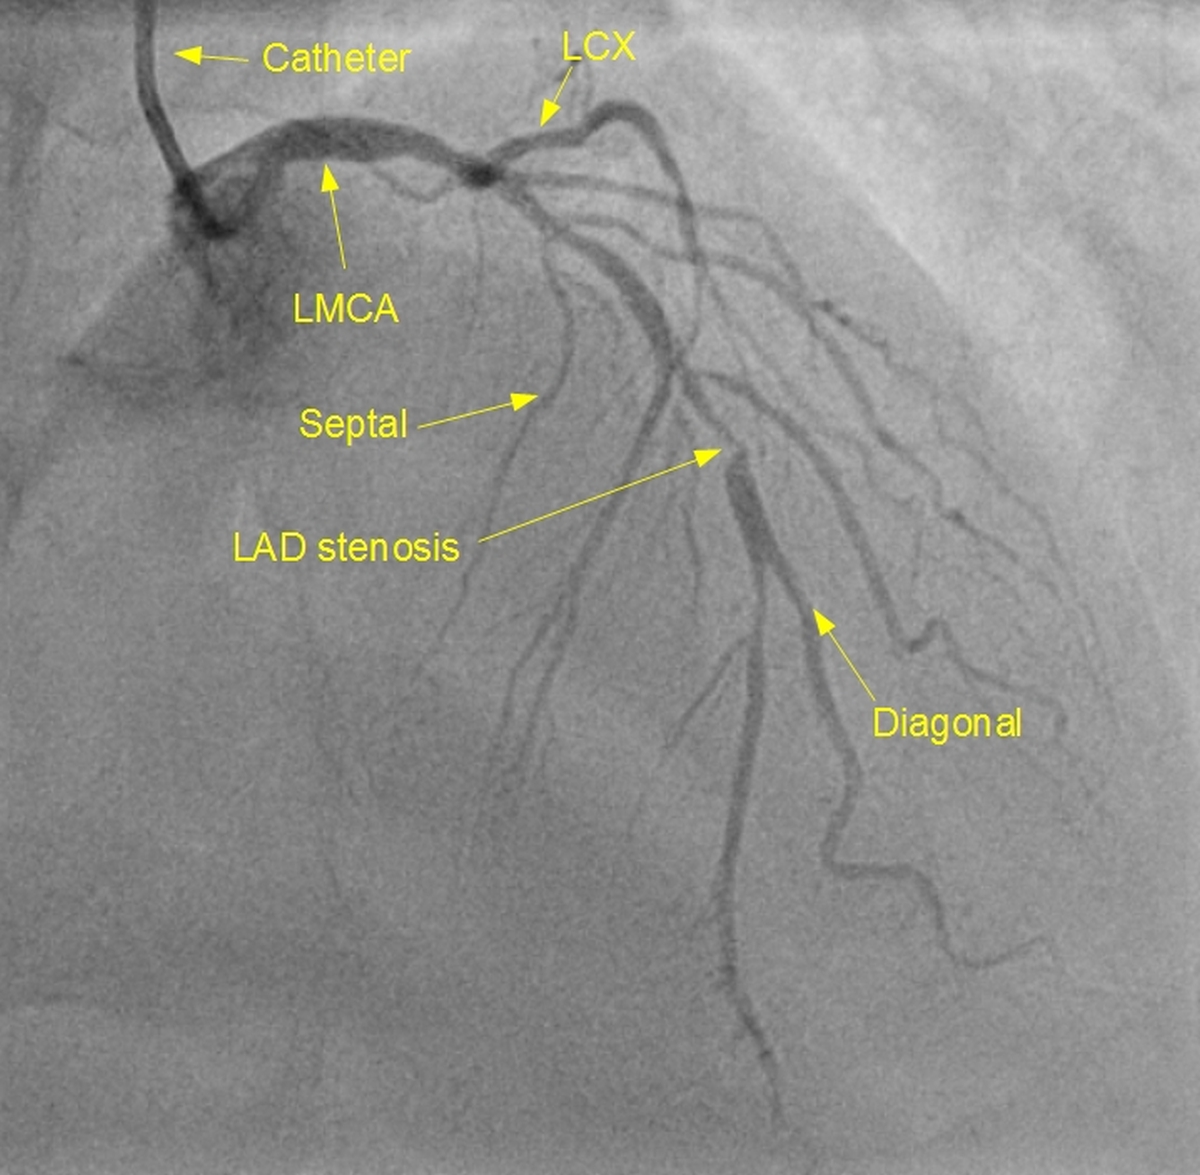 Left coronary angiogram